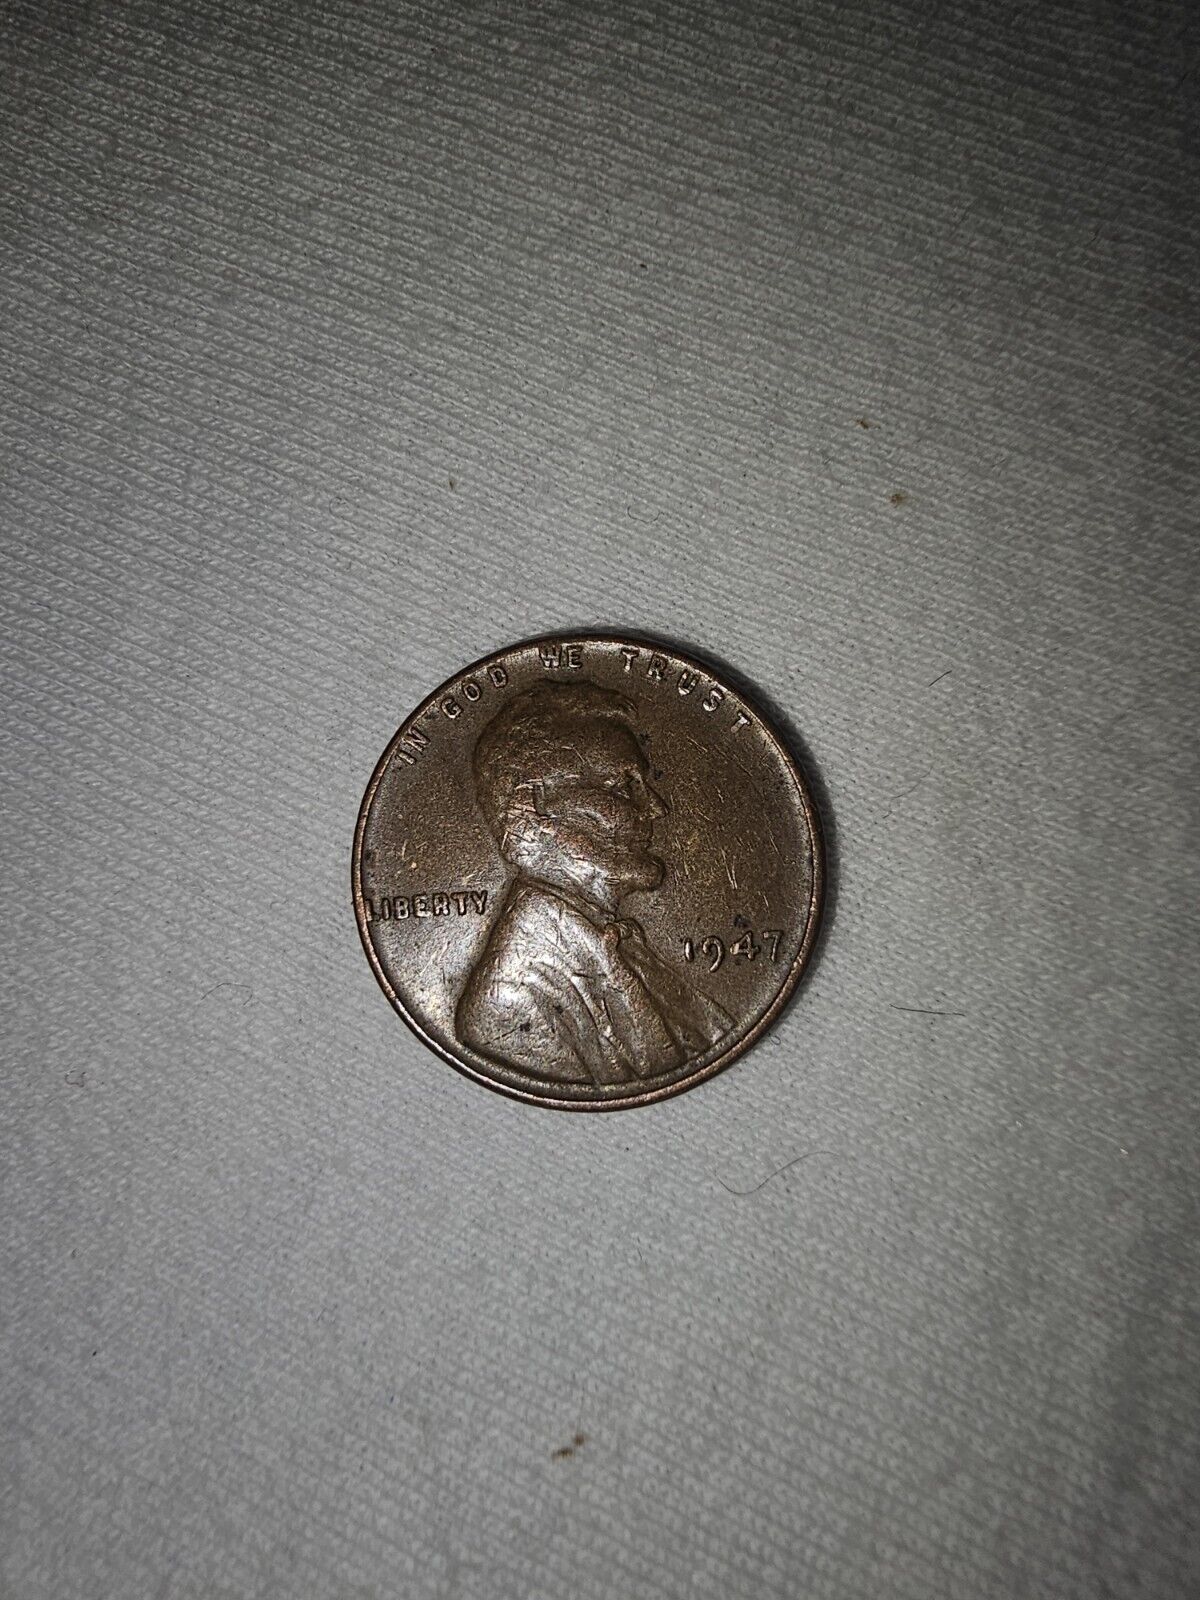 1947 Wheat Penny No Mint Mark